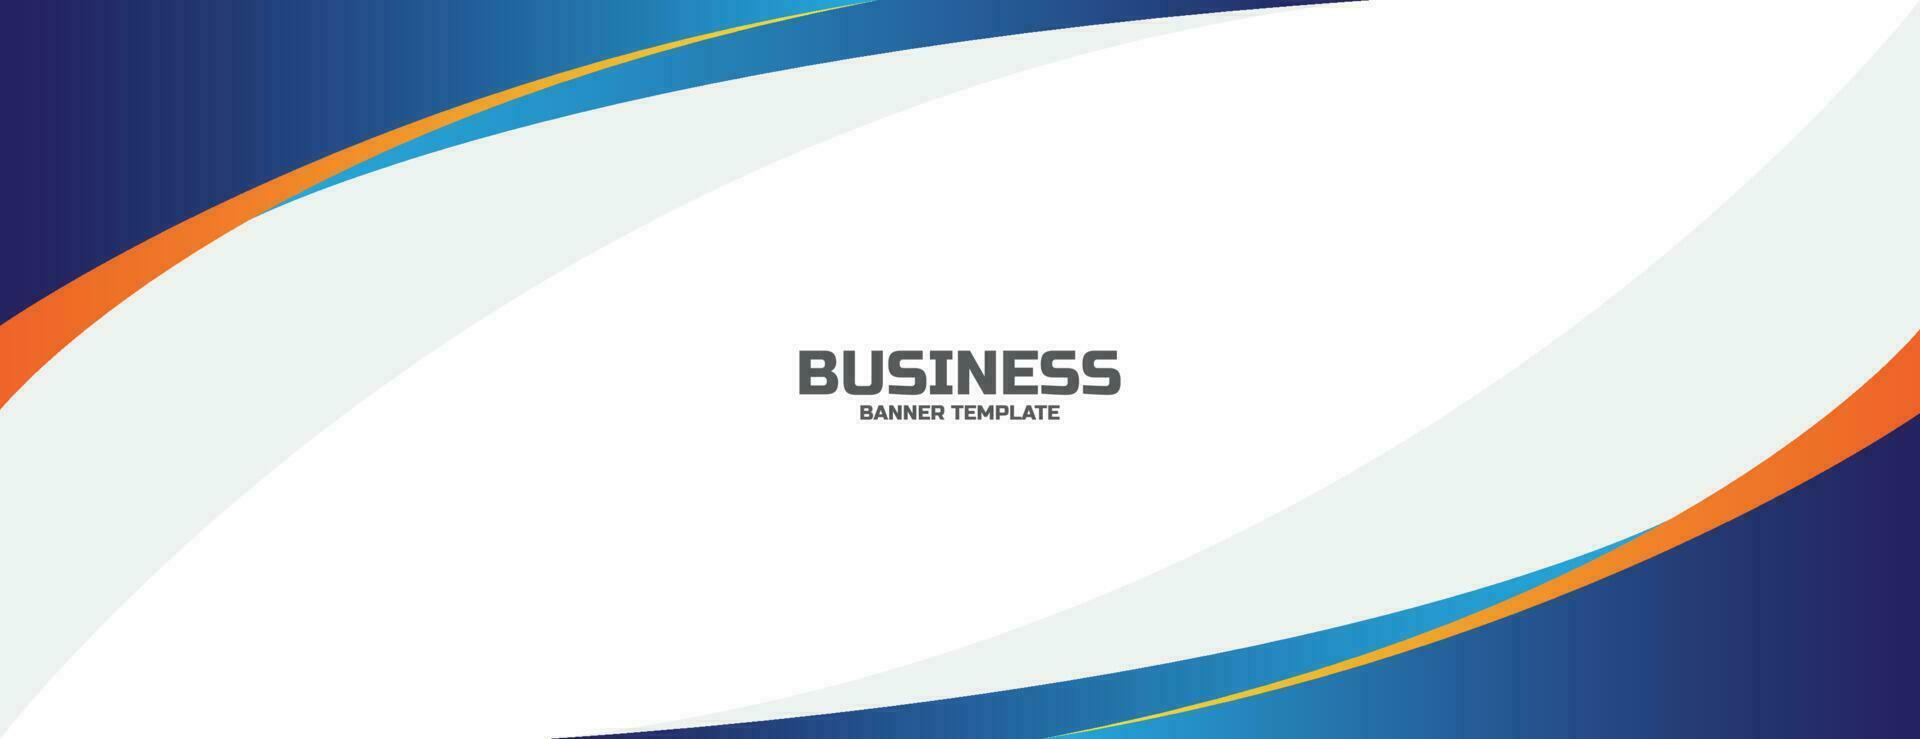 Business-Banner-Hintergrund mit blauen und orangefarbenen Wellenformen. Vektor-Illustration vektor